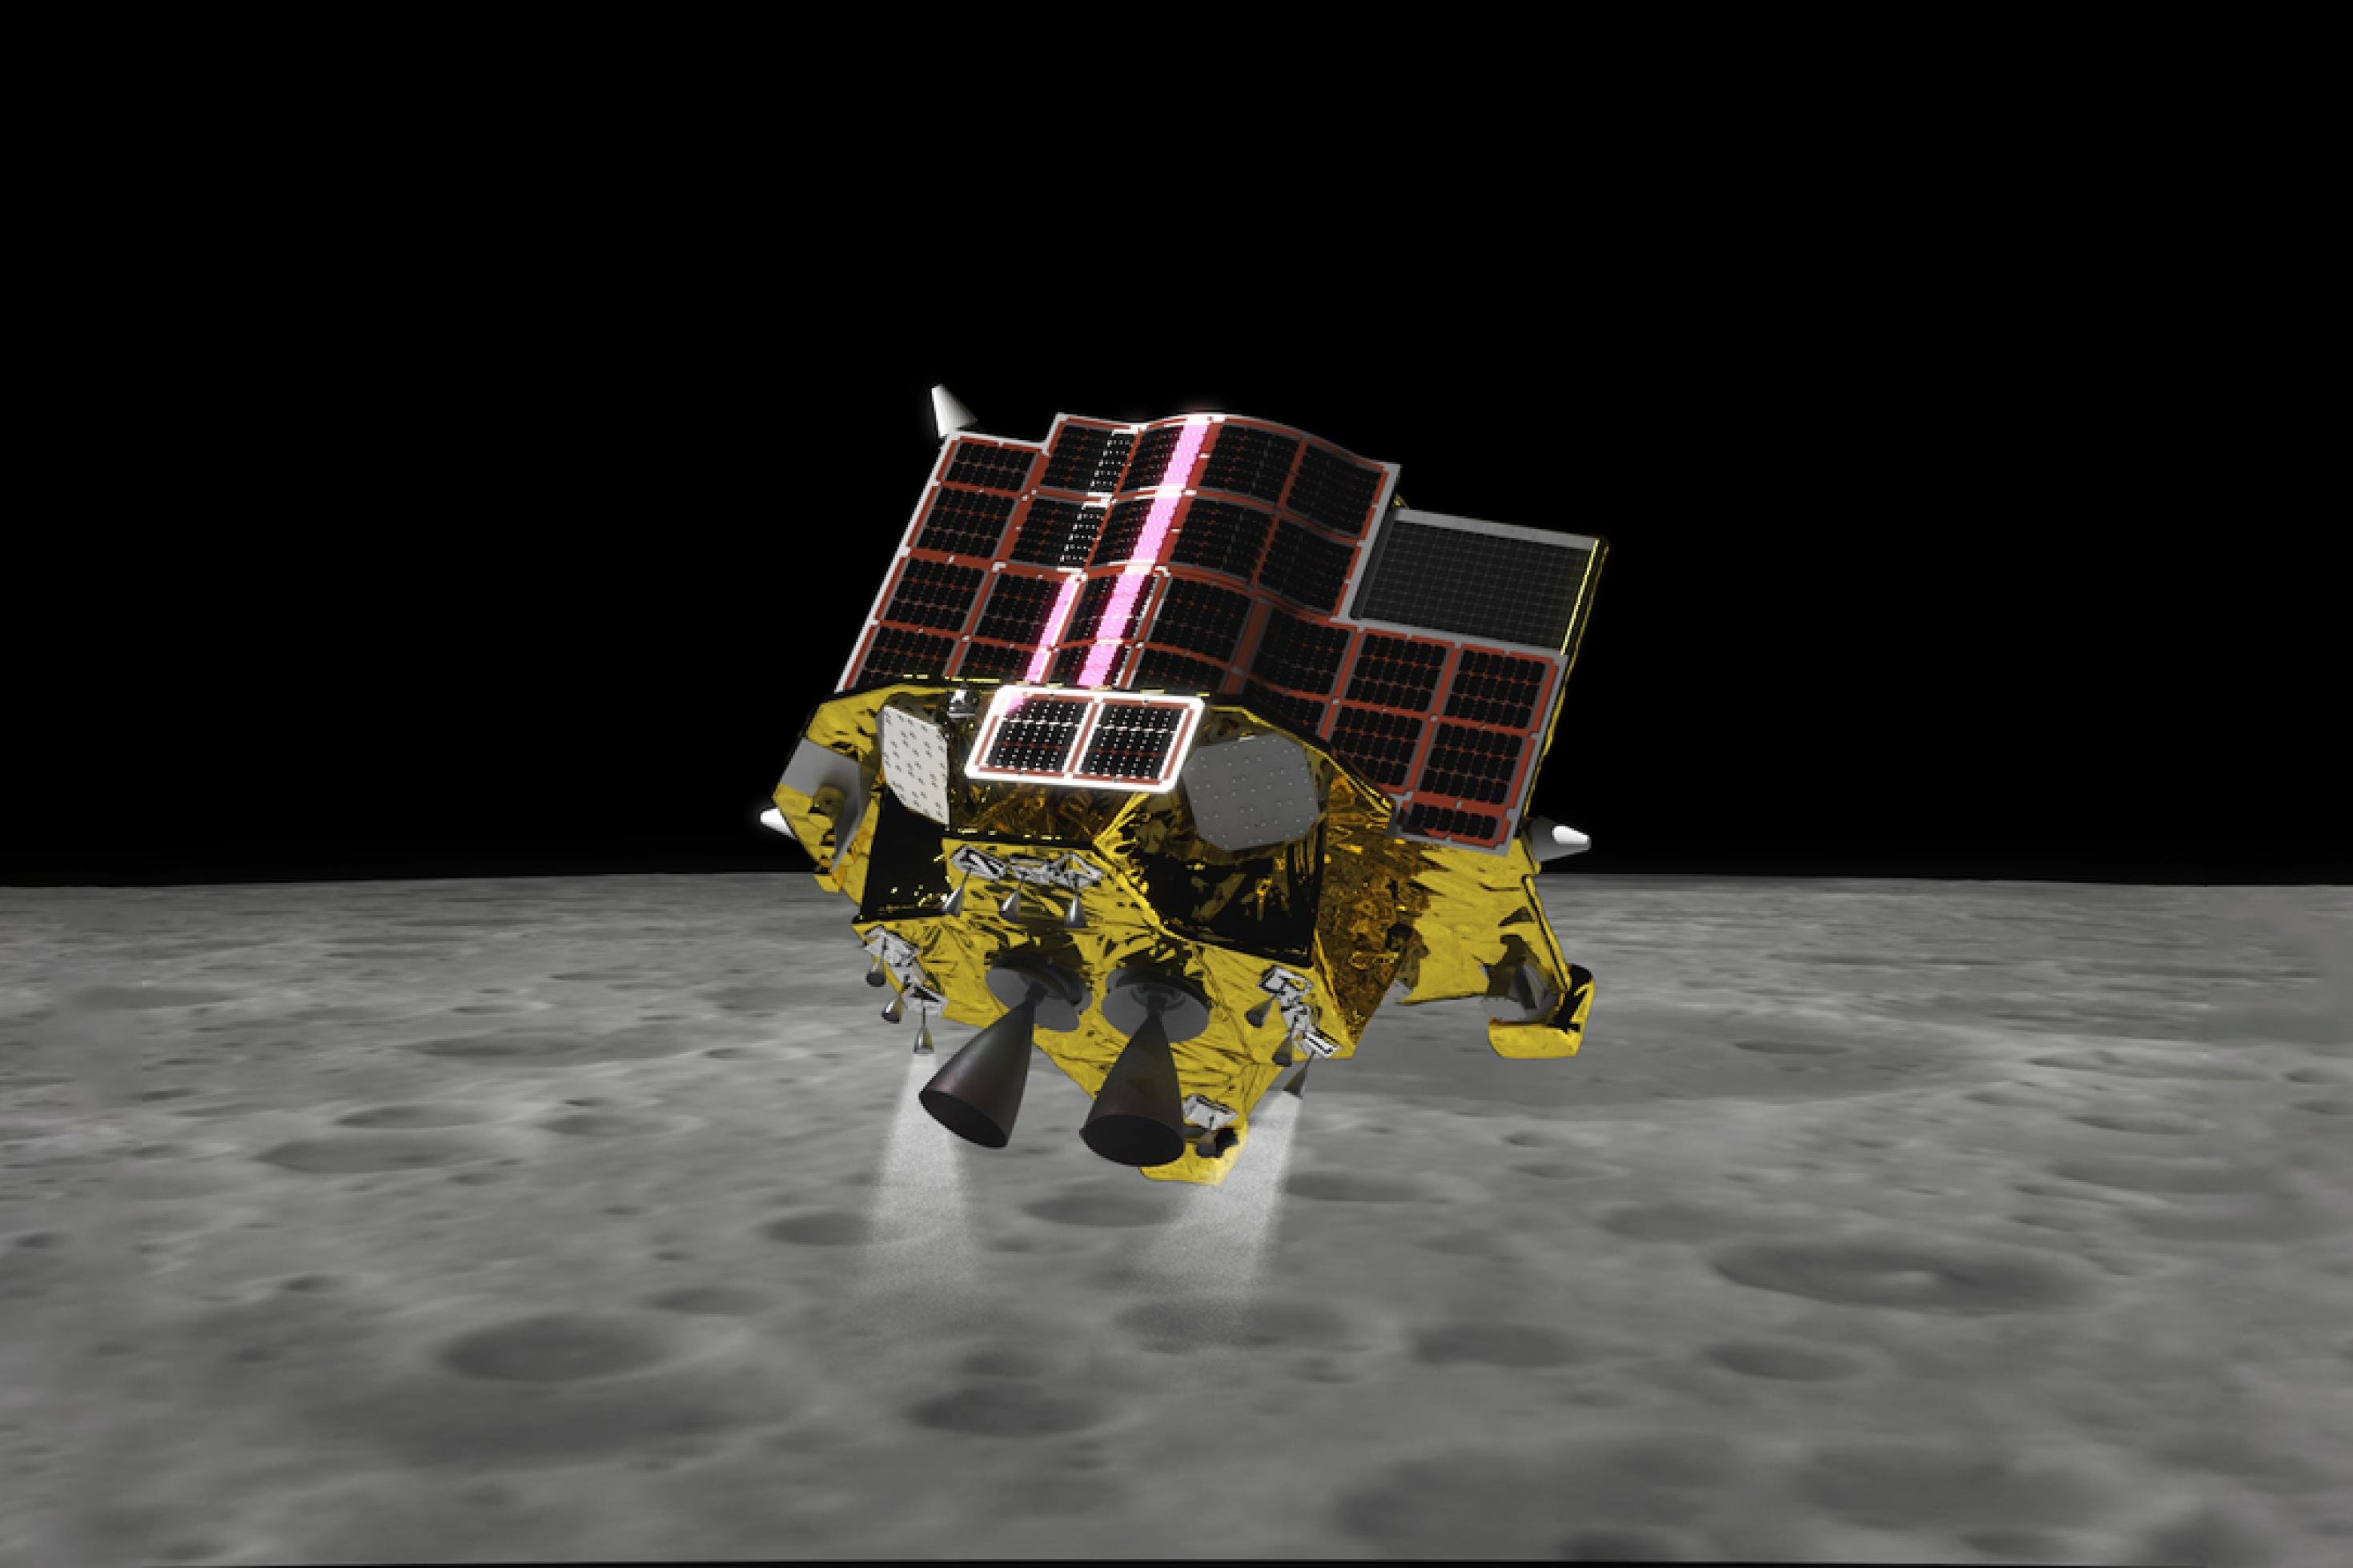 Das Mondlandefahrzeug SLIM beim Landeanflug auf dem Mond. Die Triebwerke sind eingeschaltet, damit das Fahrzeug seine Geschwindigkeit drosselt.